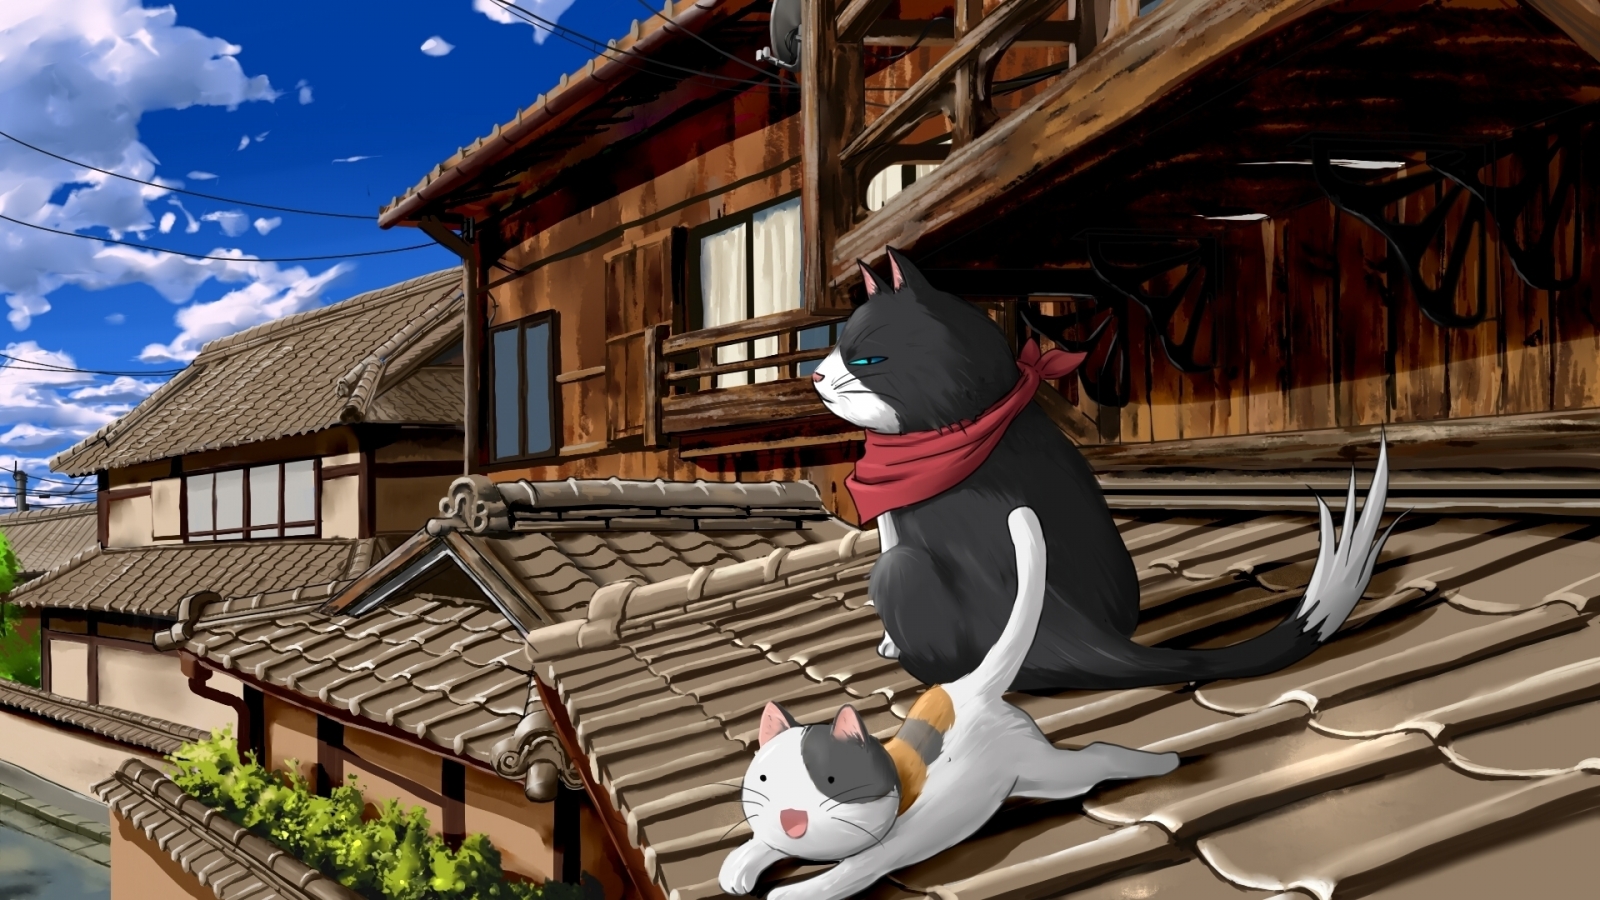 Nyan Koi Anime Series for 1600 x 900 HDTV resolution